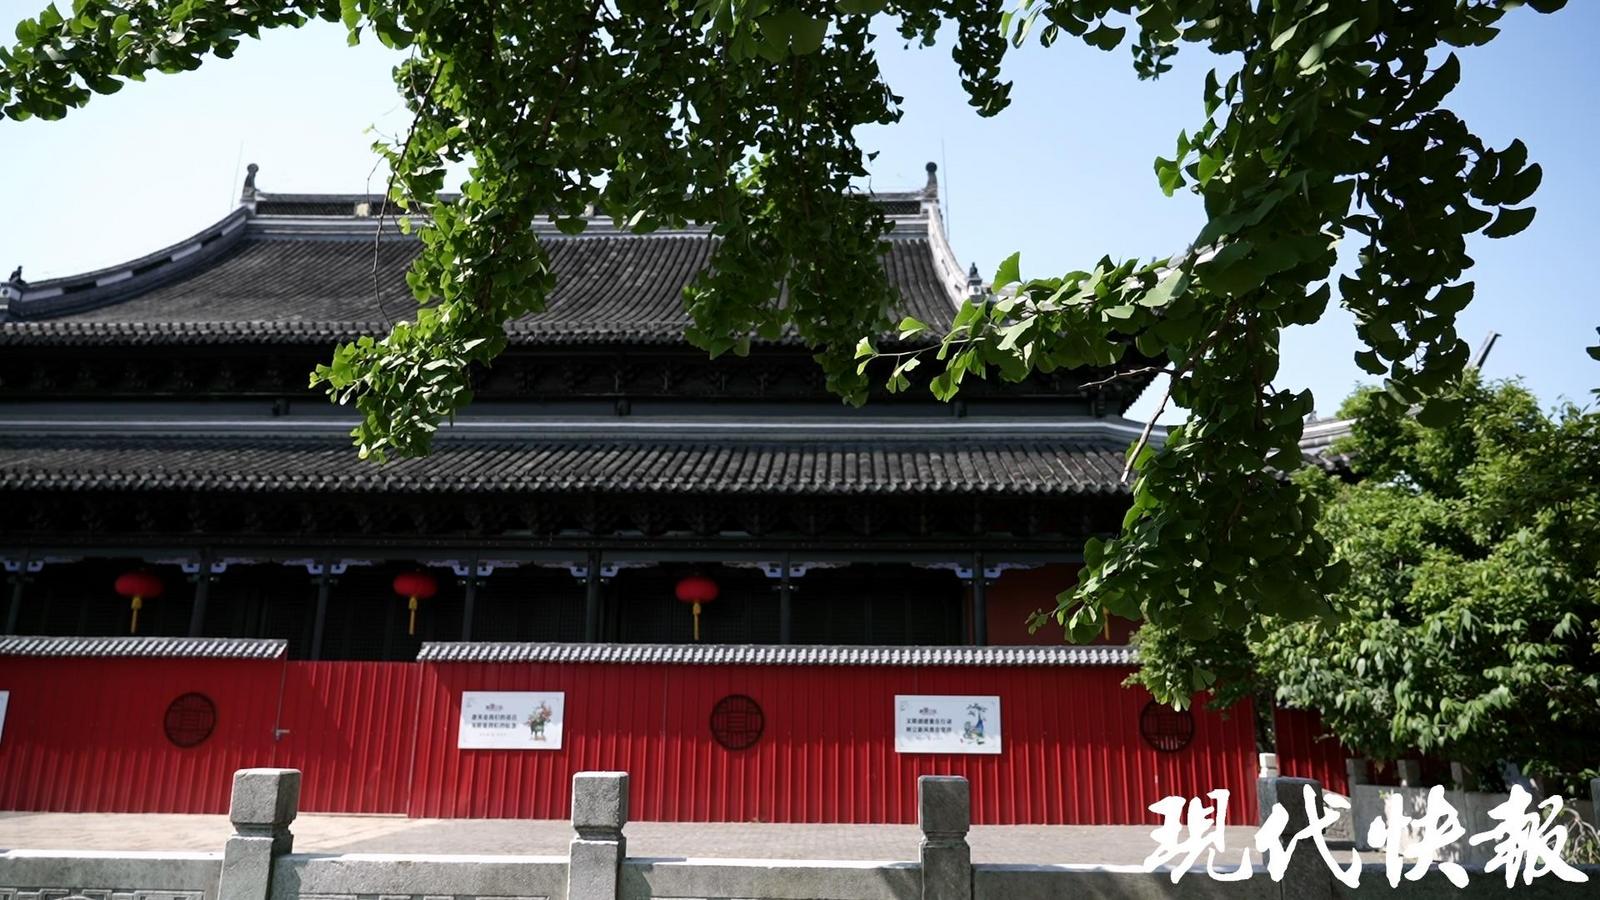 天宁寺与运河,与扬州的历史文化,百姓生活息息相关